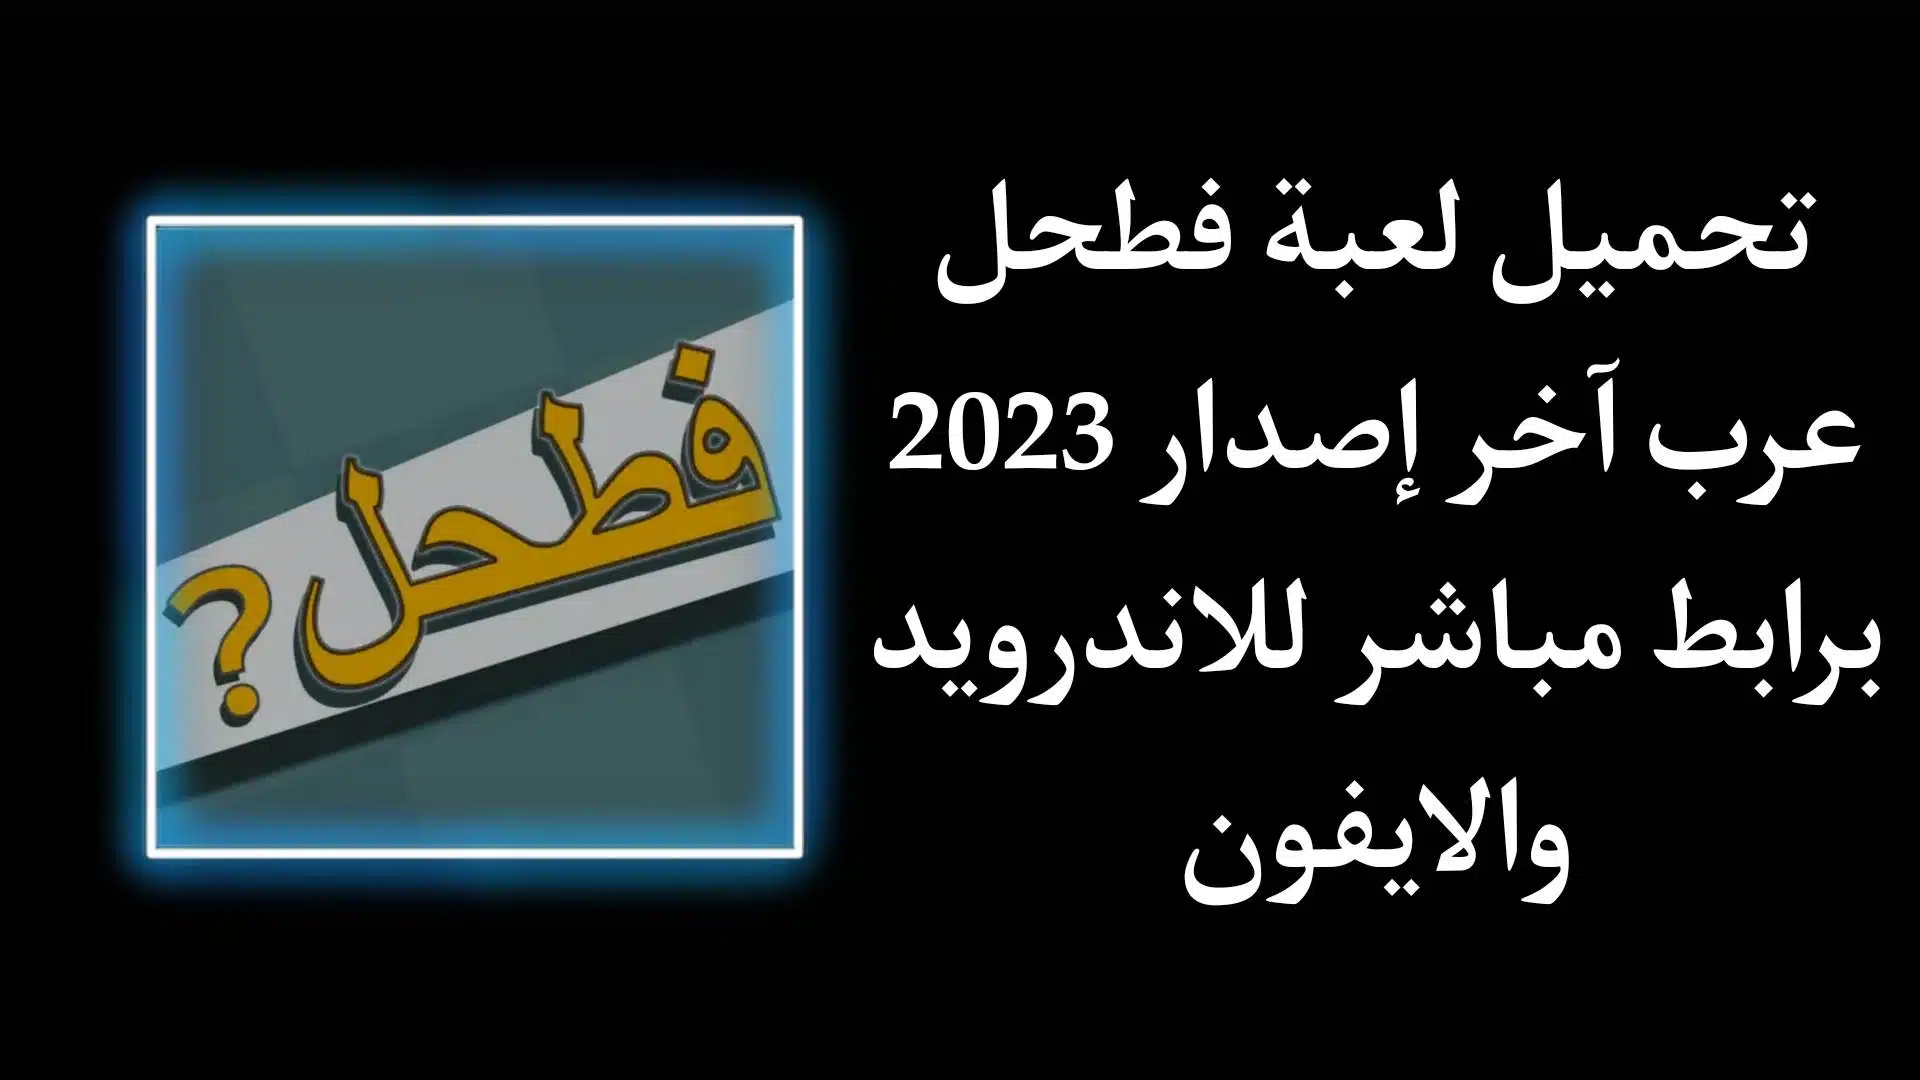 تحميل لعبة فطحل العرب اخر اصدار 2023 للاندرويد والايفون